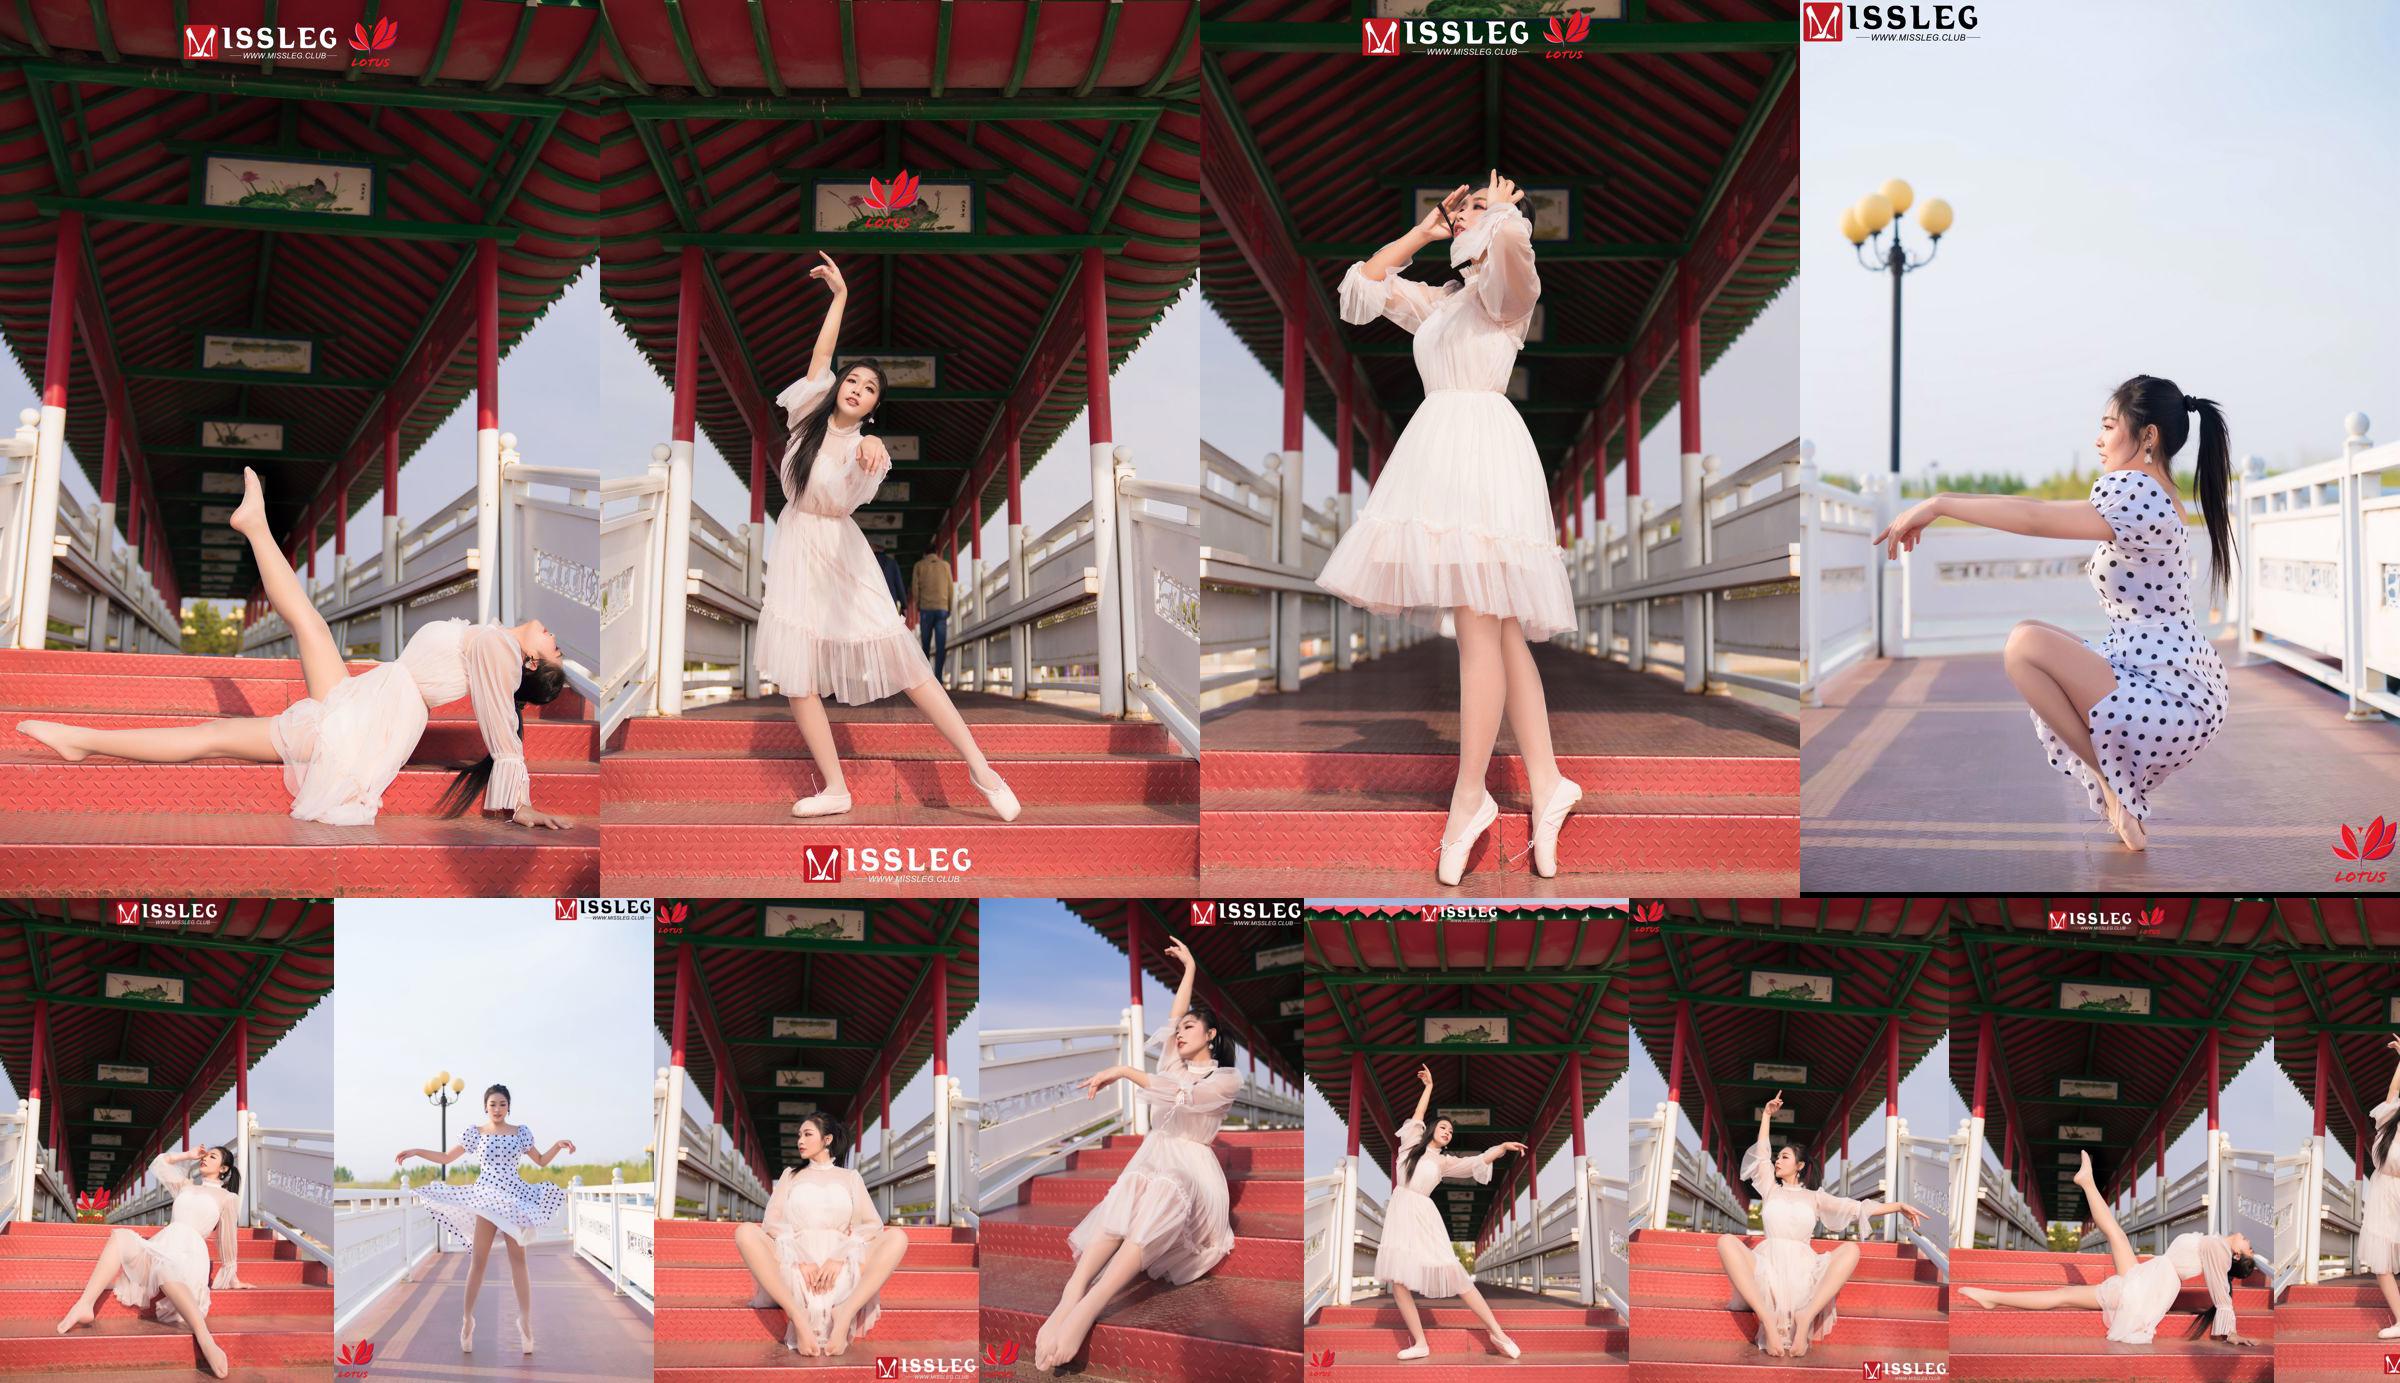 [蜜 丝 MISSLEG] M018 Imp 3 "Scenic Dancer" No.5f771f Pagina 1